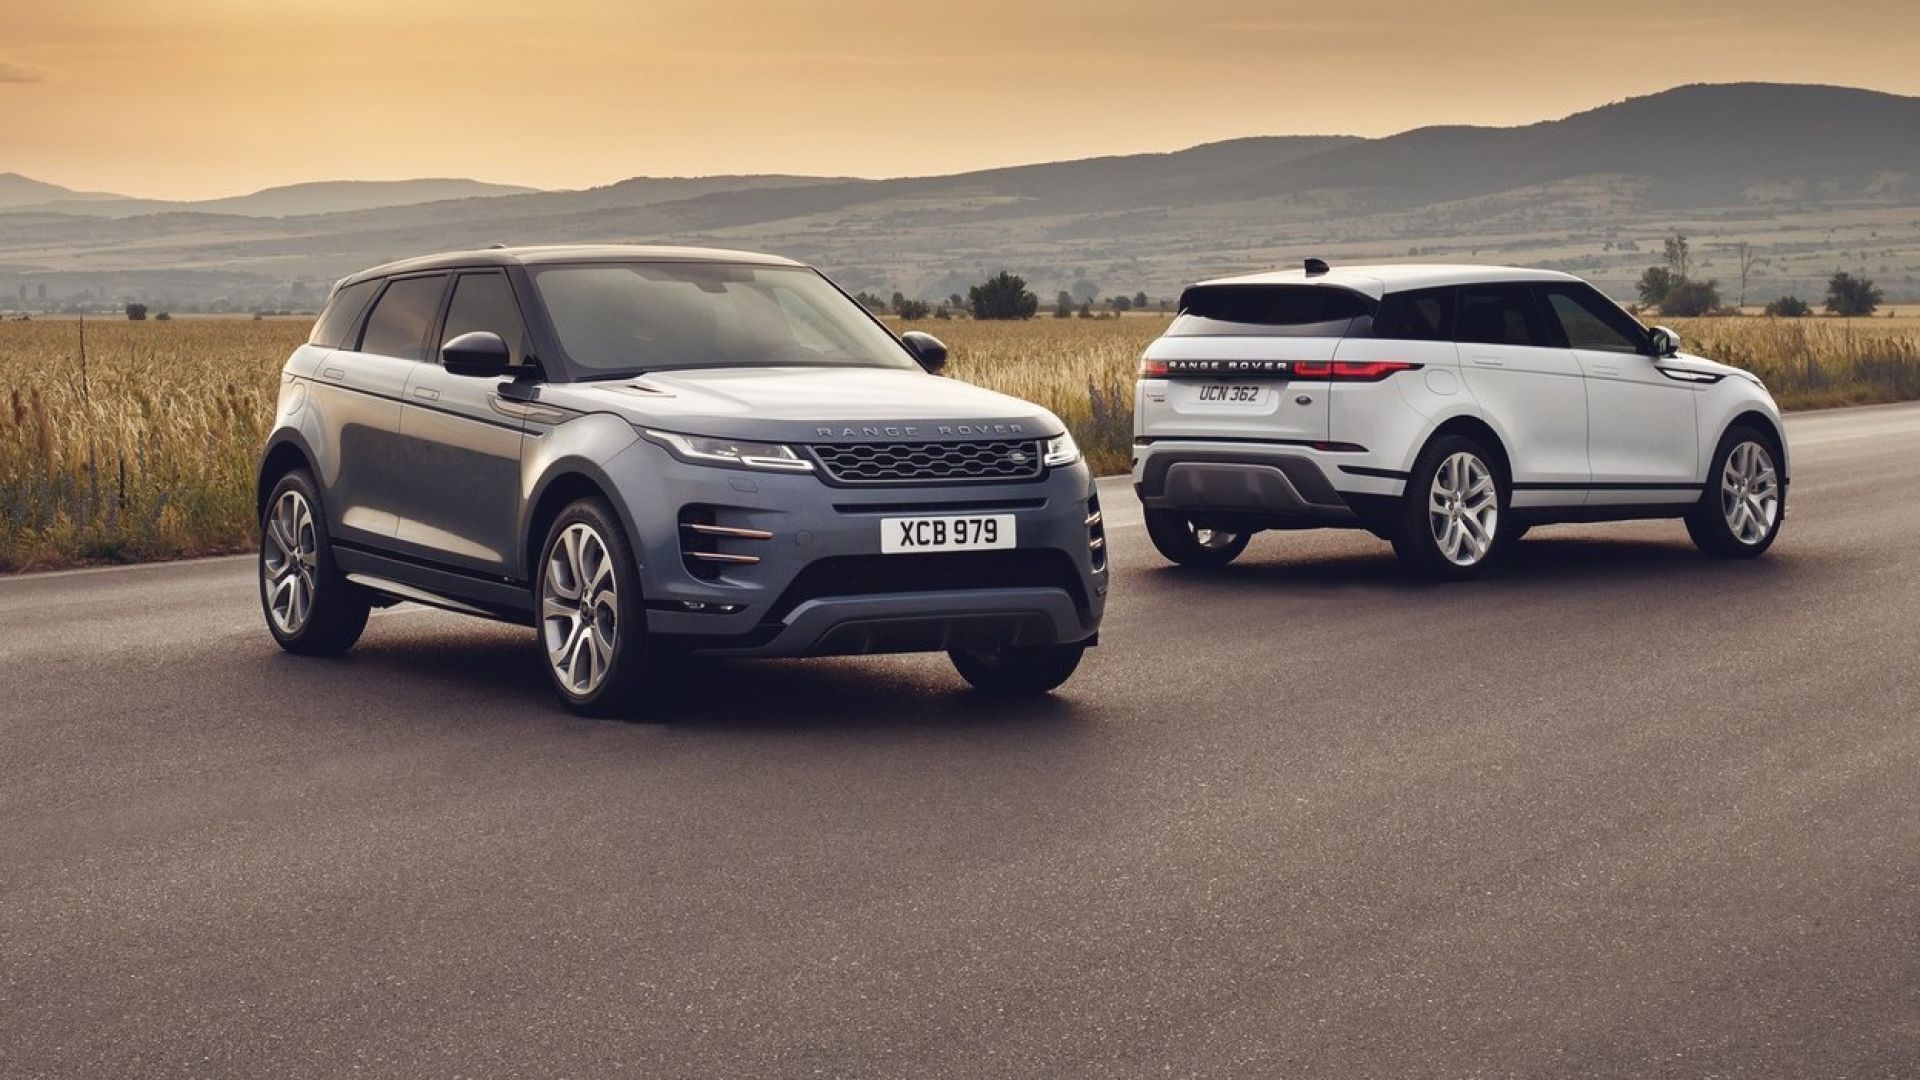 Nuova Range Rover Evoque 2019, anche ibrida i prezzi al